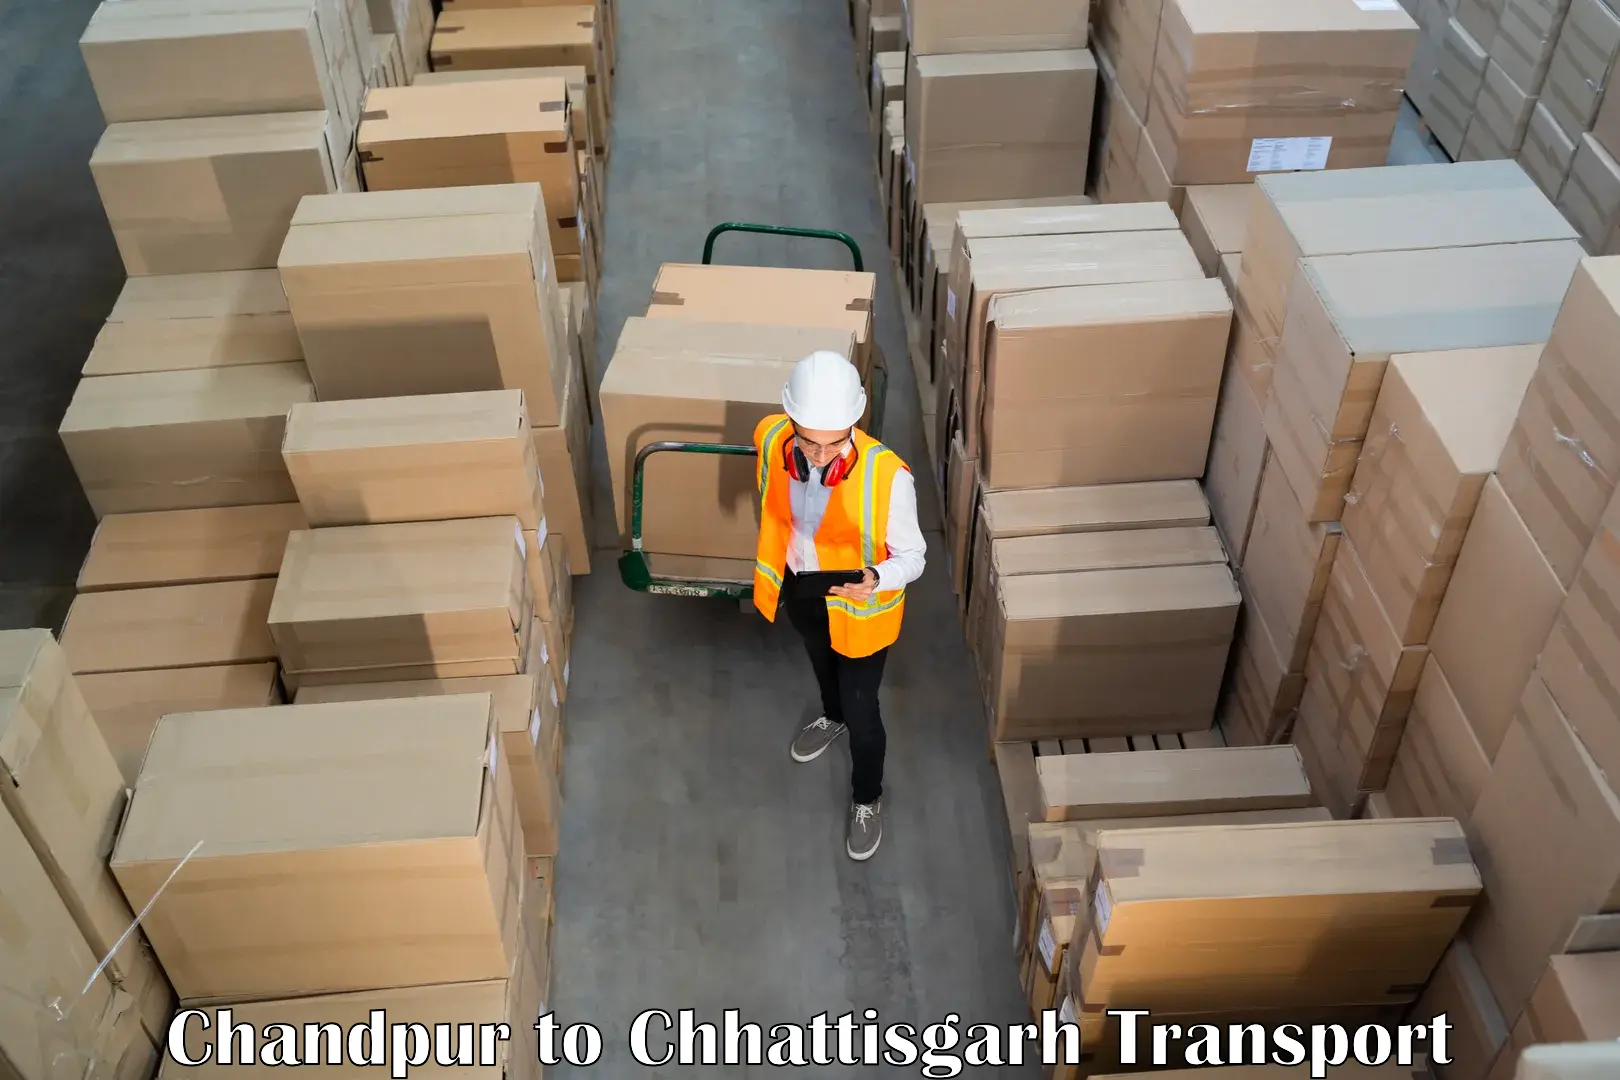 Container transportation services in Chandpur to Wadrafnagar